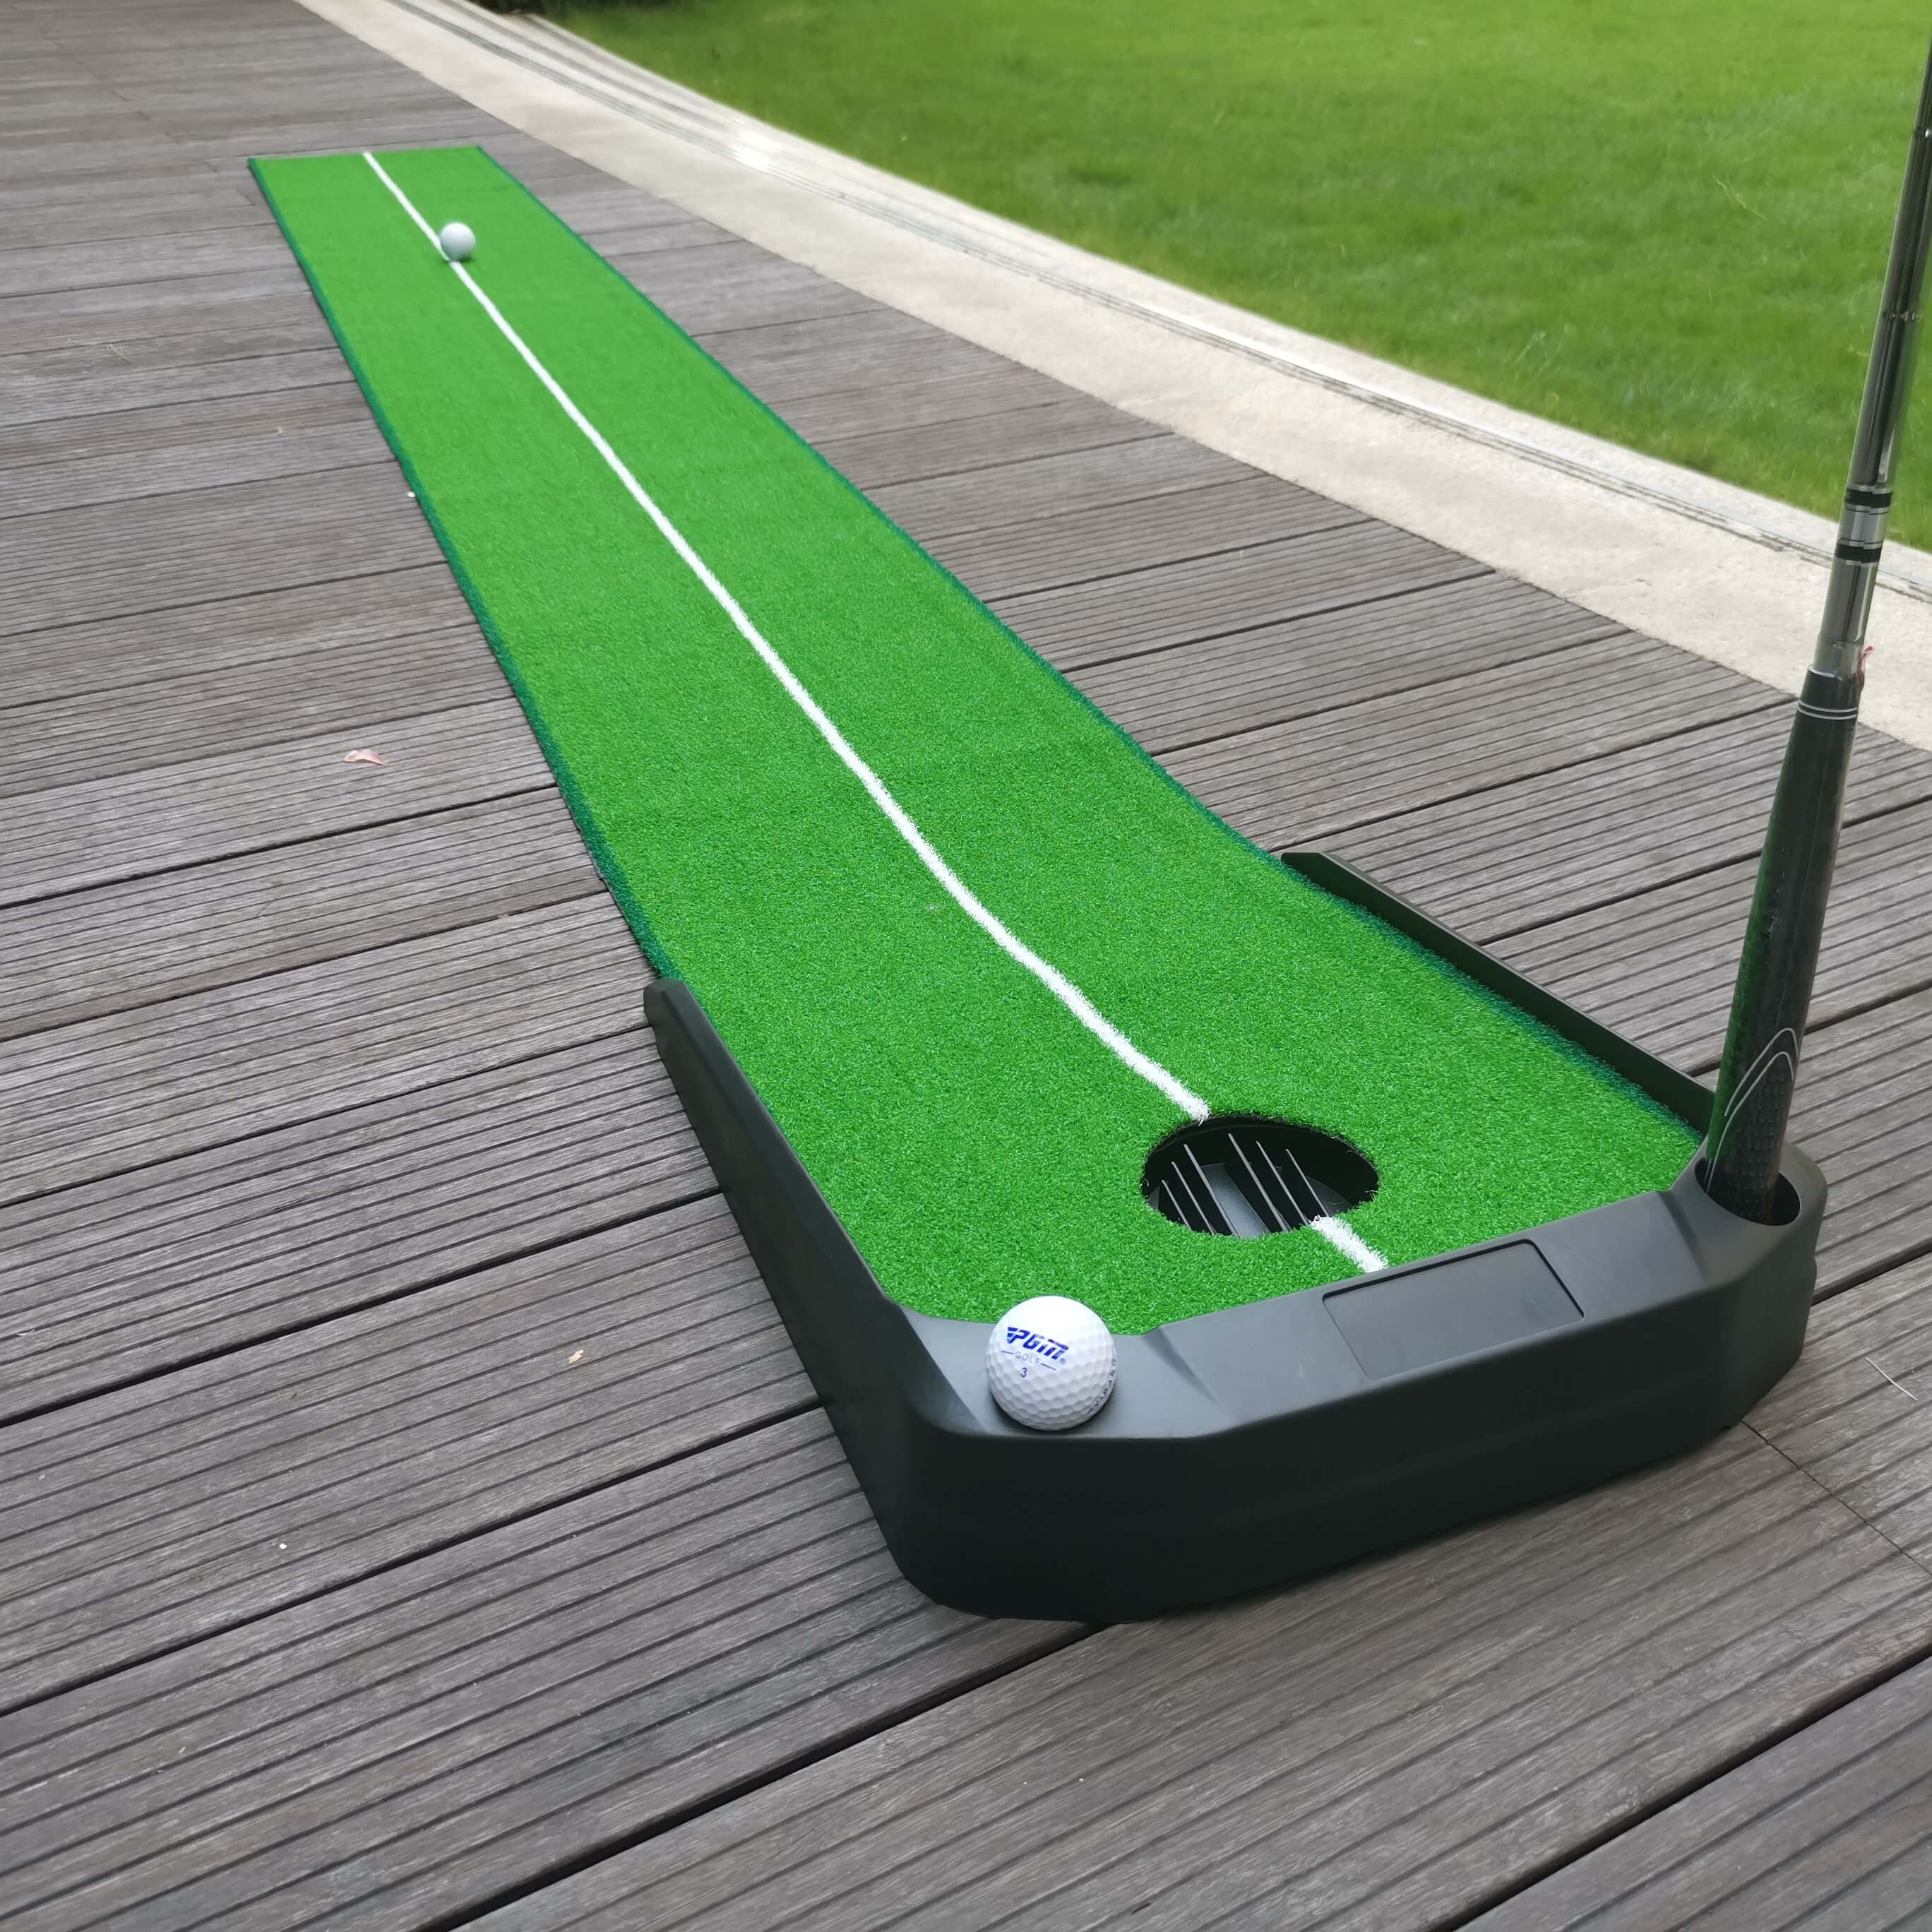 PGM Golf High-tech Putting Green（Artificial Grass）